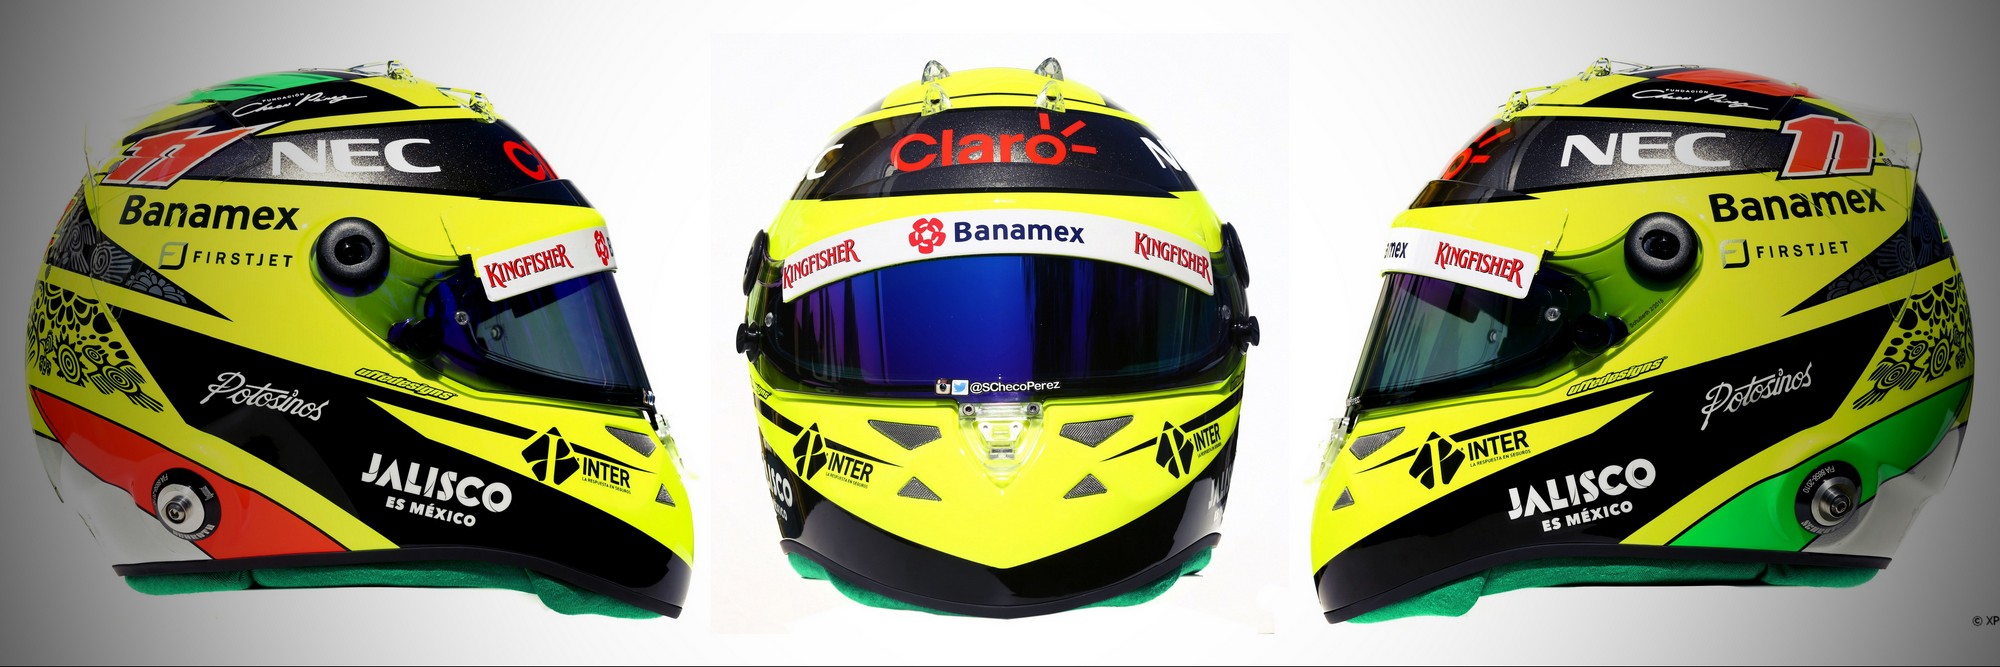 Шлем Серхио Переса на сезон 2016 года | 2016 helmet of Sergio Perez